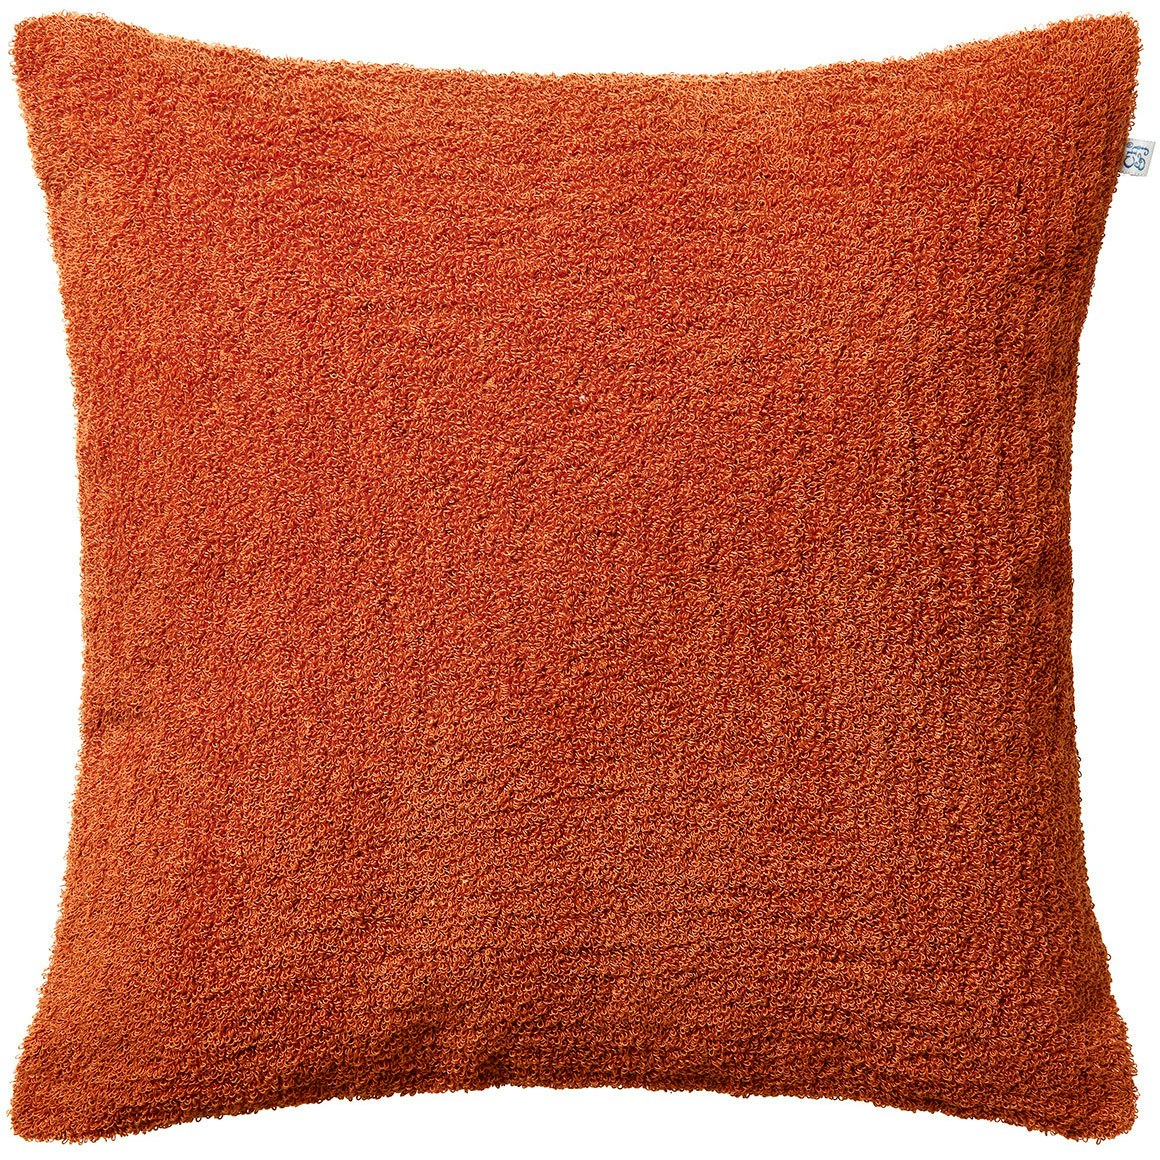 Mani Cushion Cover Bouclé 50x50 cm, Apricot Orange